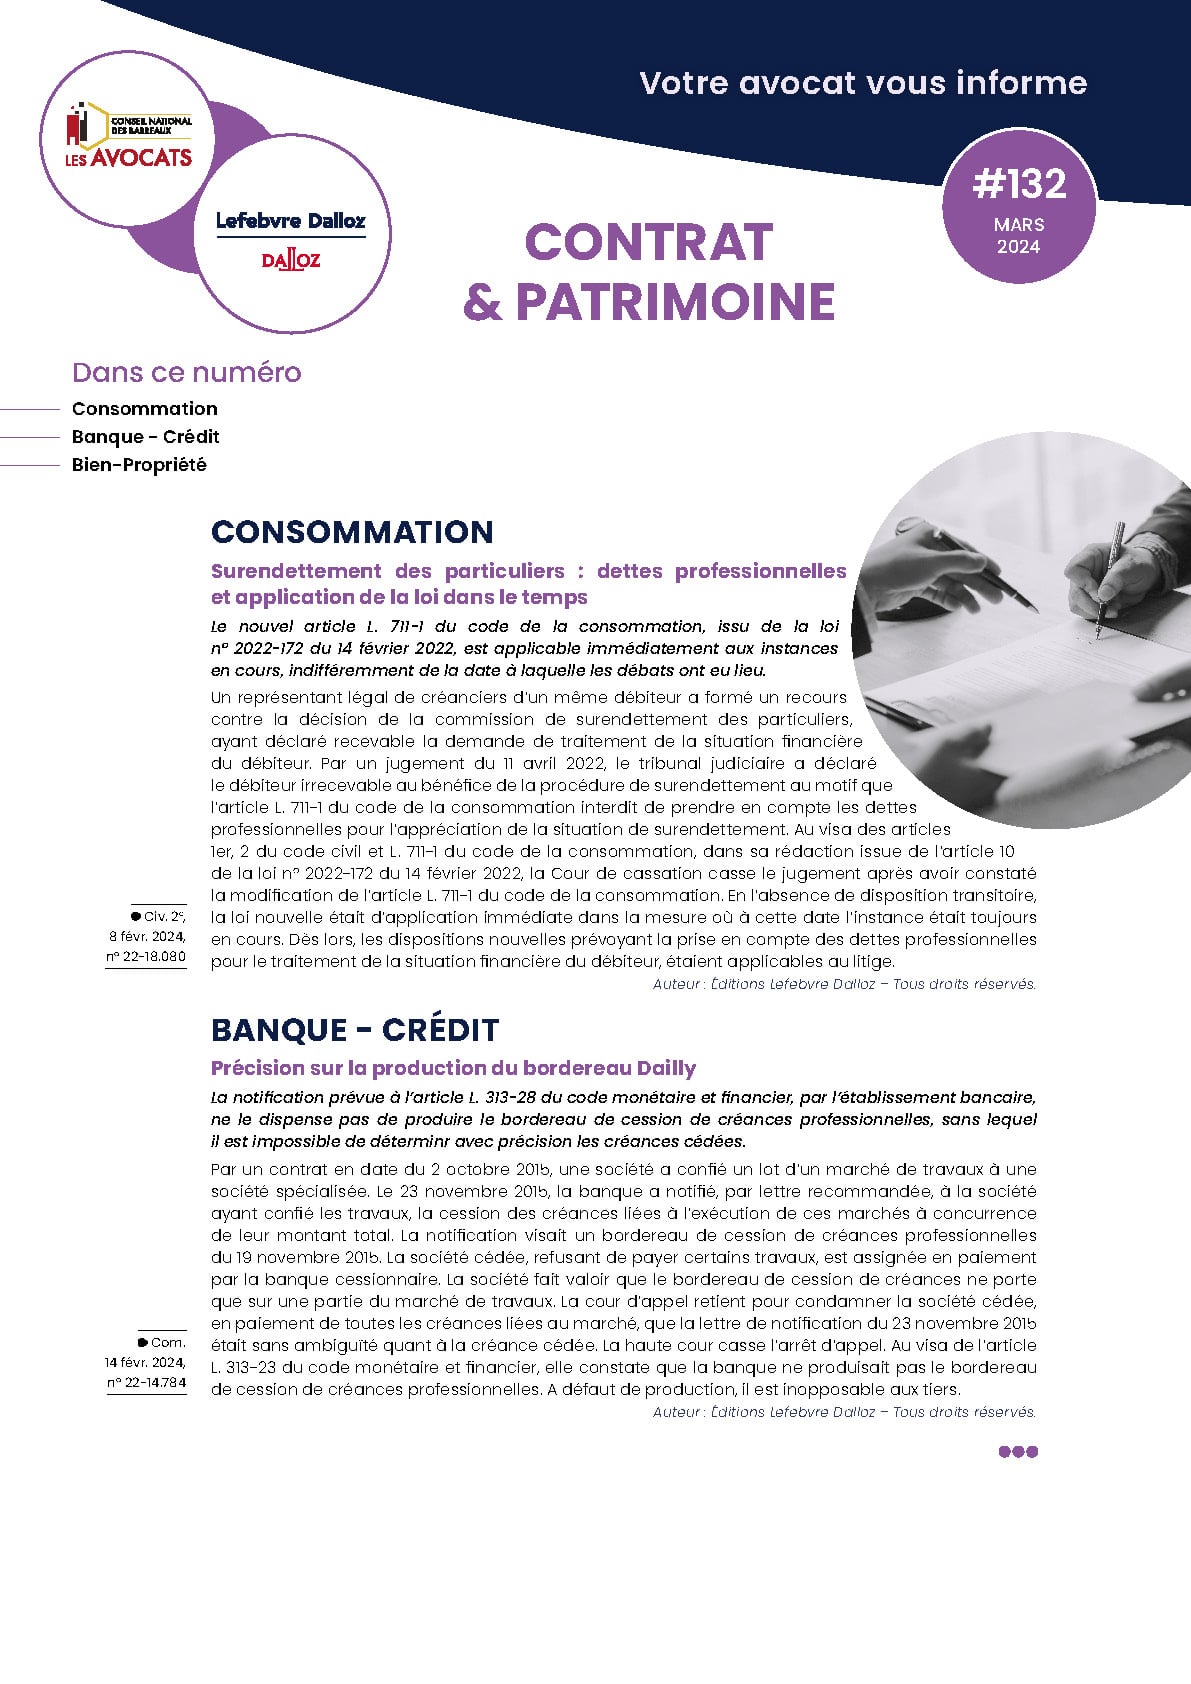 Newsletter-Contrat-et-Patrimoine